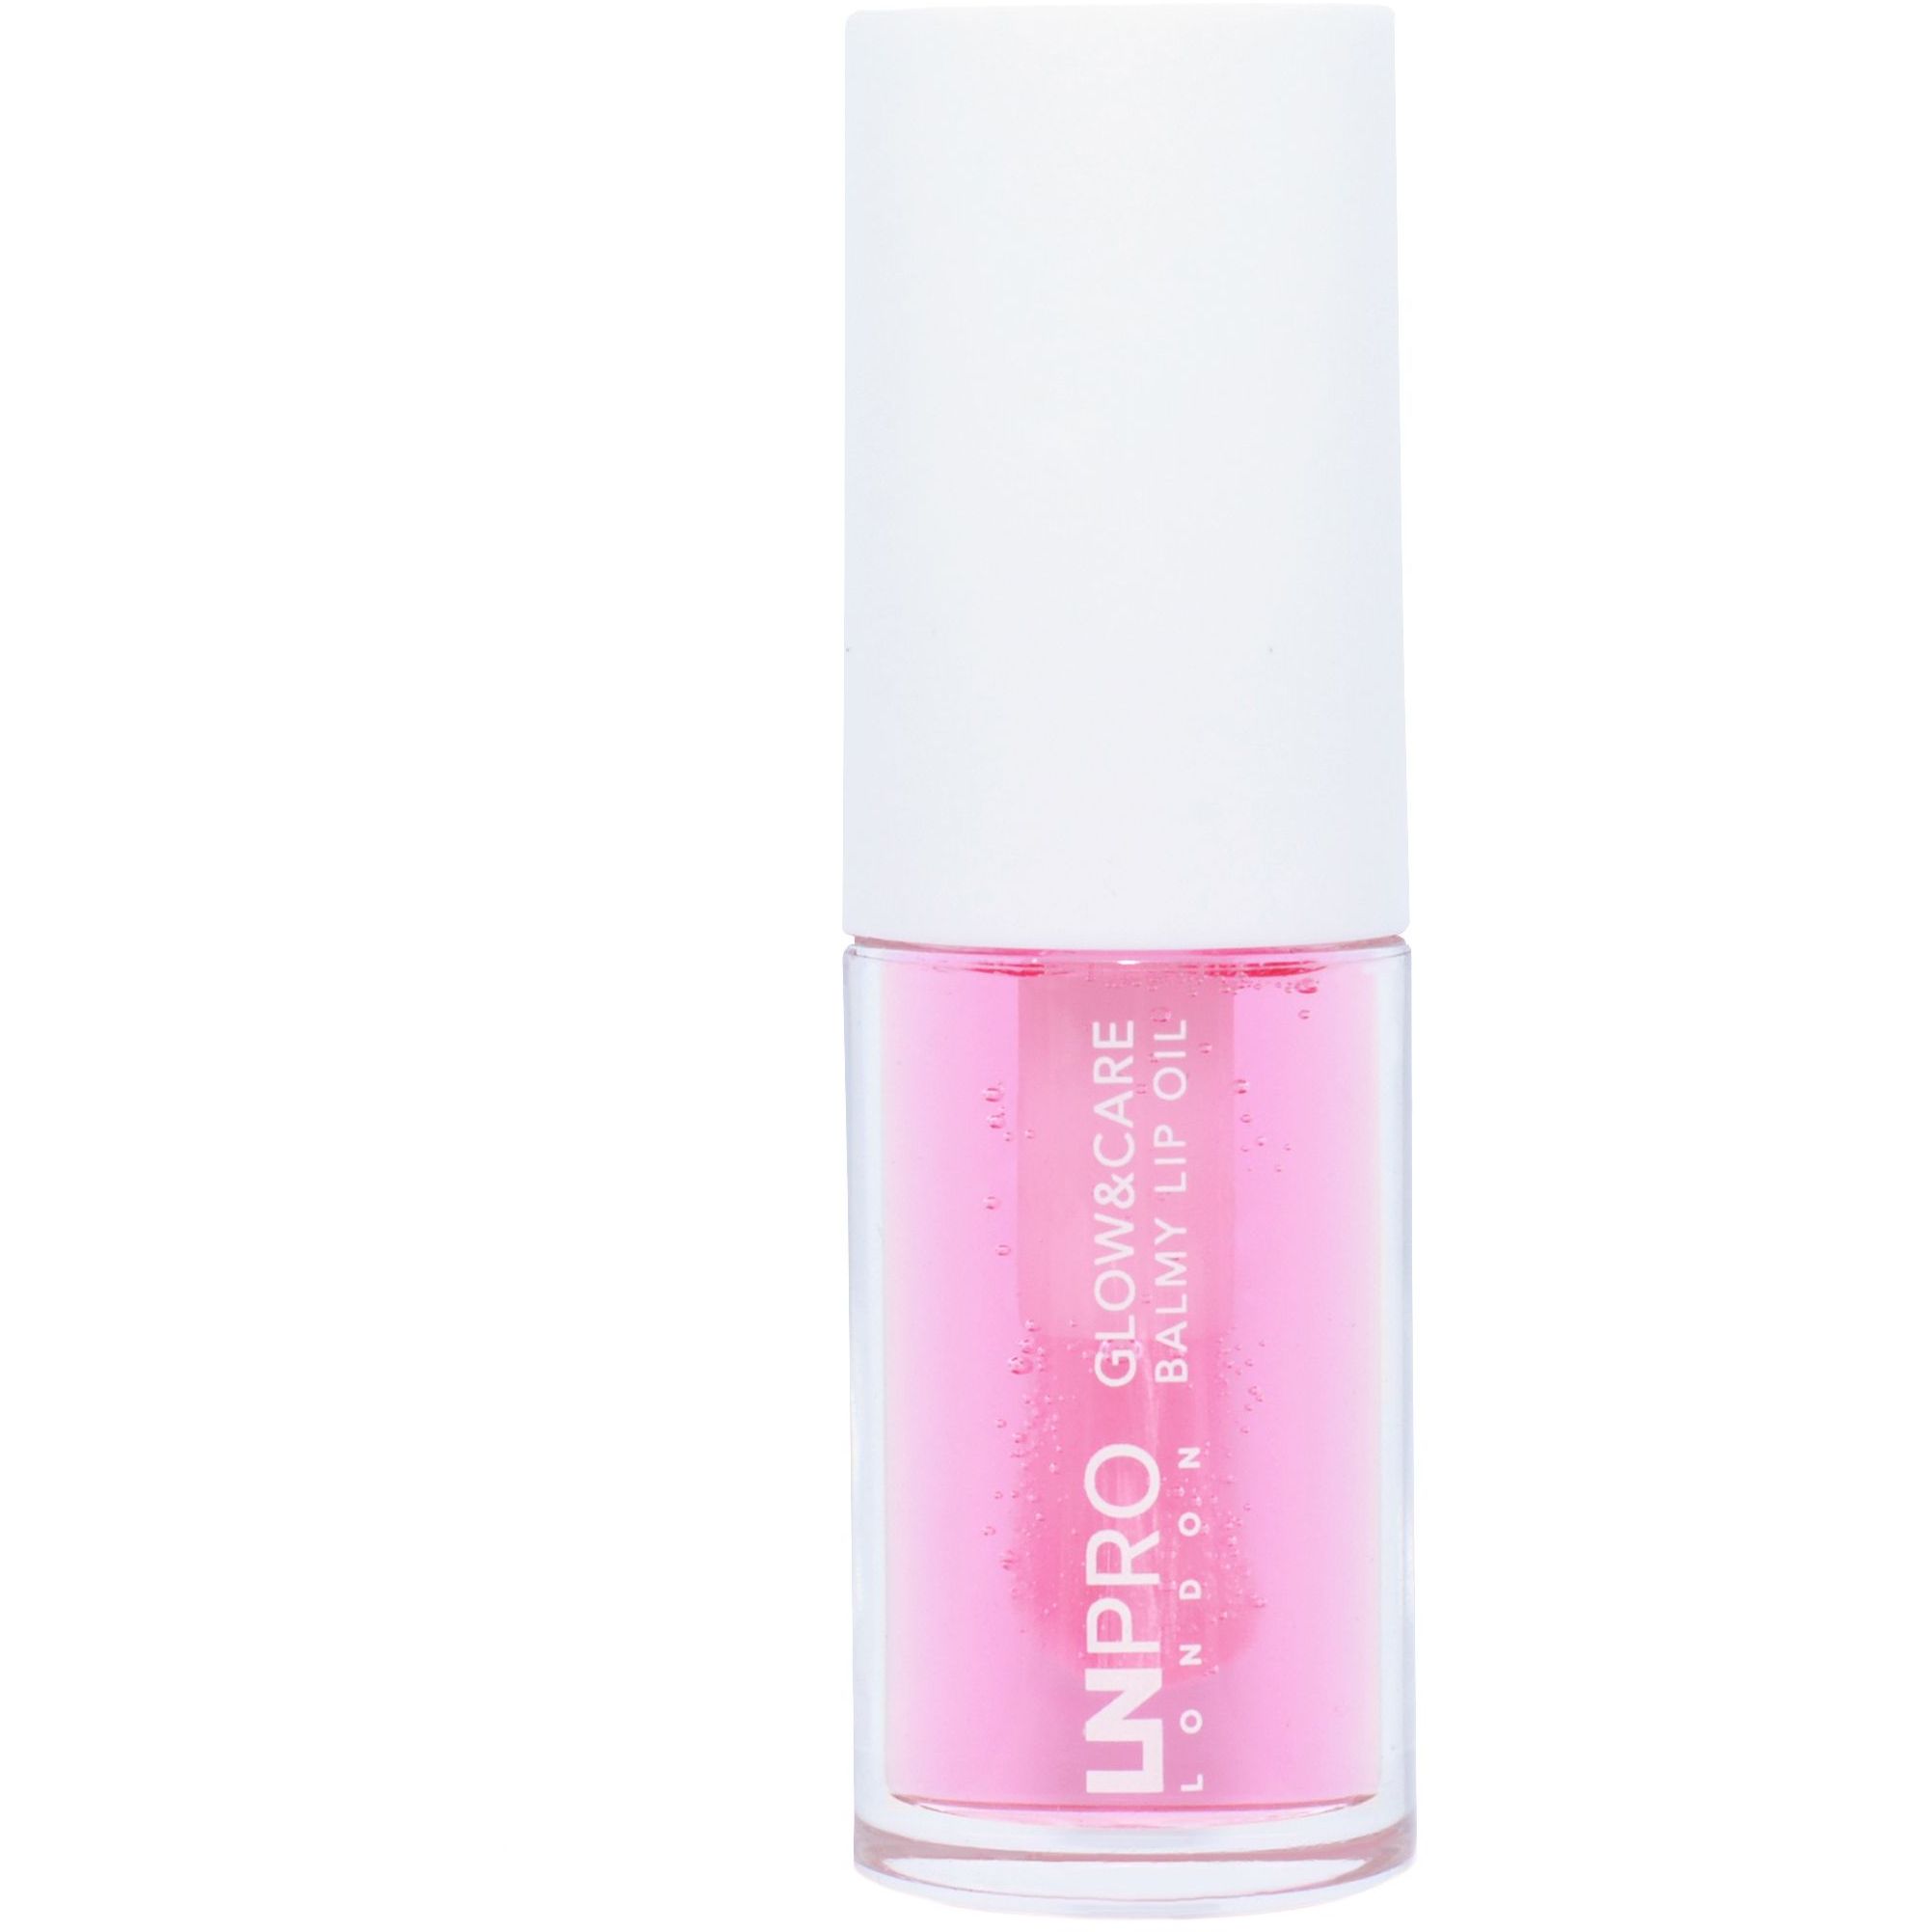 Олія-бальзам для губ LN Pro Glow & Care Balmy Lip Oil відтінок 103, 3.7 мл - фото 5